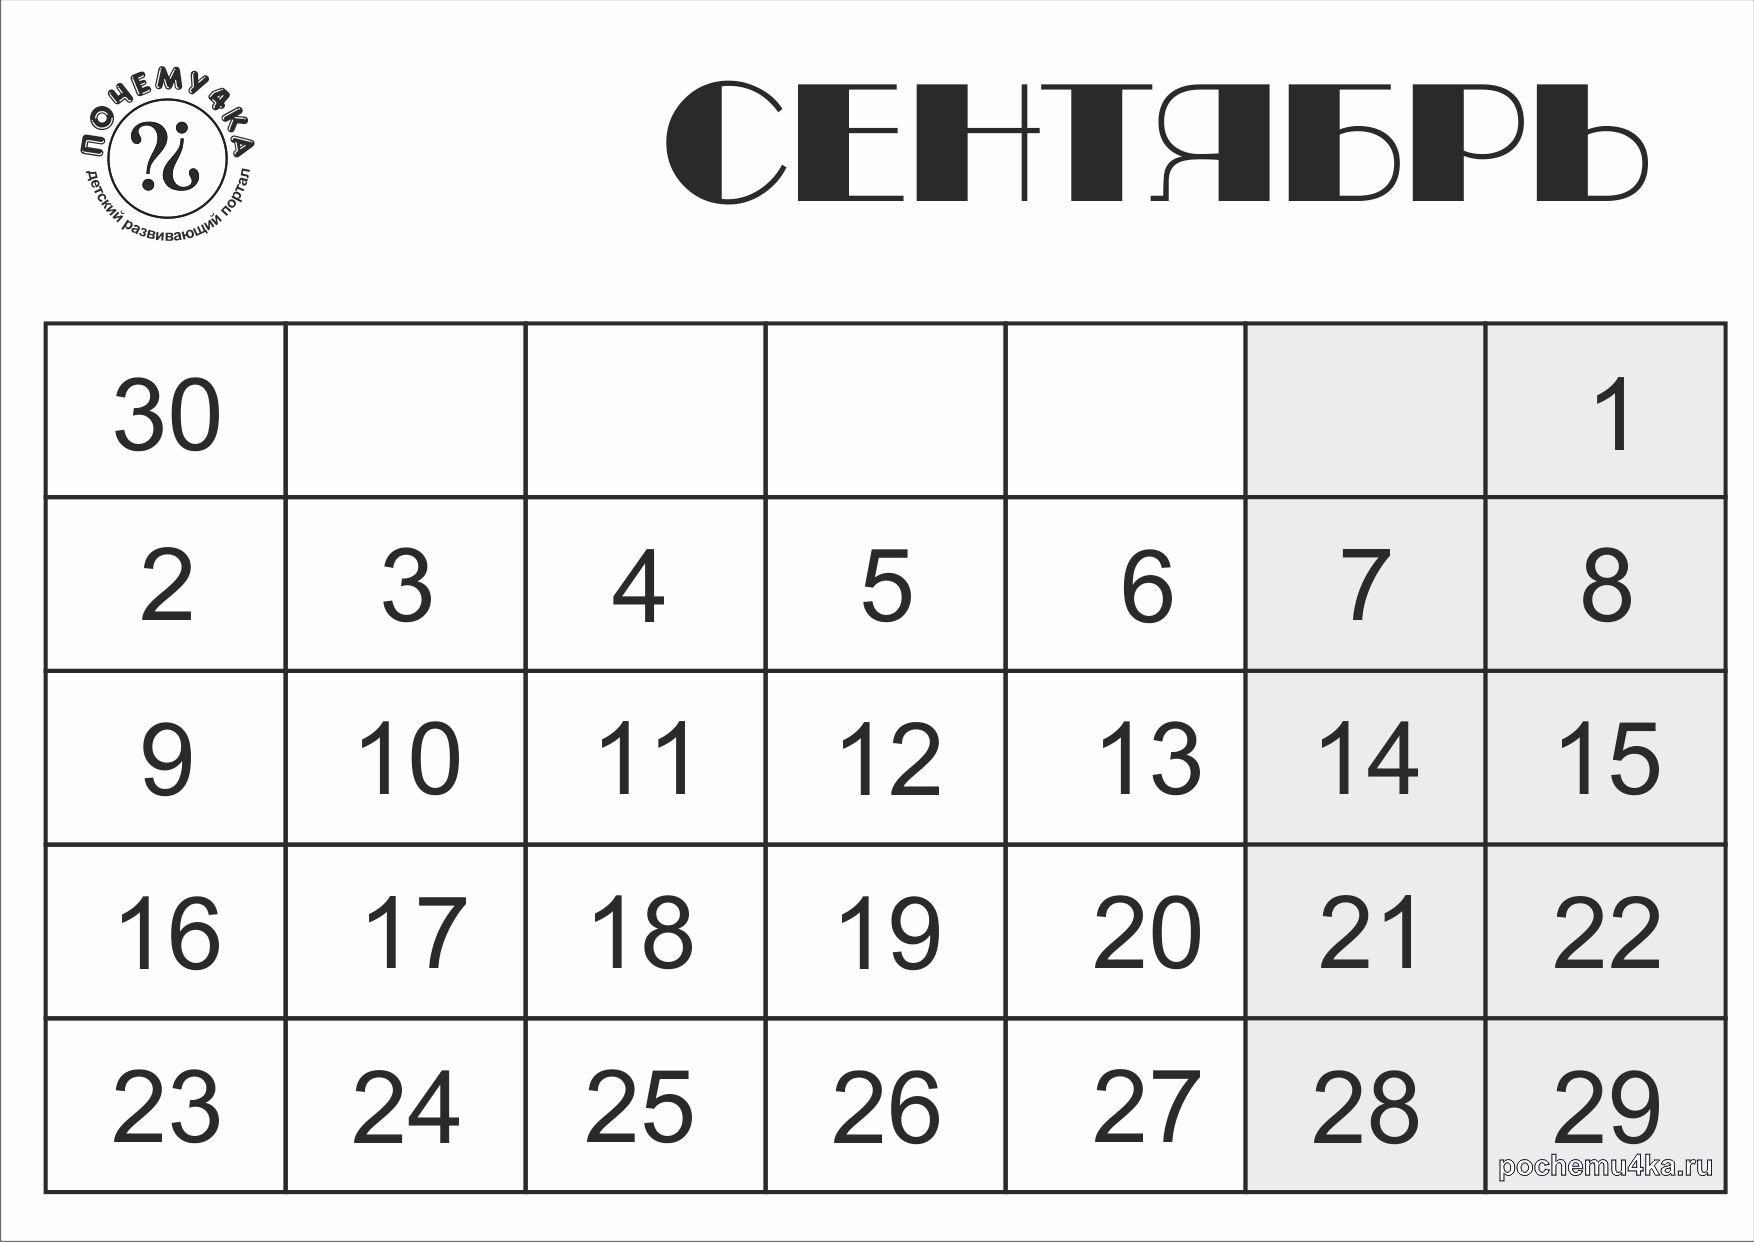 Развивающий календарь 60 детских почему на 2013 год (Сентябрь,  чёрно-белый) - Развивающий календарь 60 детских почему - Календари -  Обучение и развитие - ПочемуЧка - Сайт для детей и их родителей